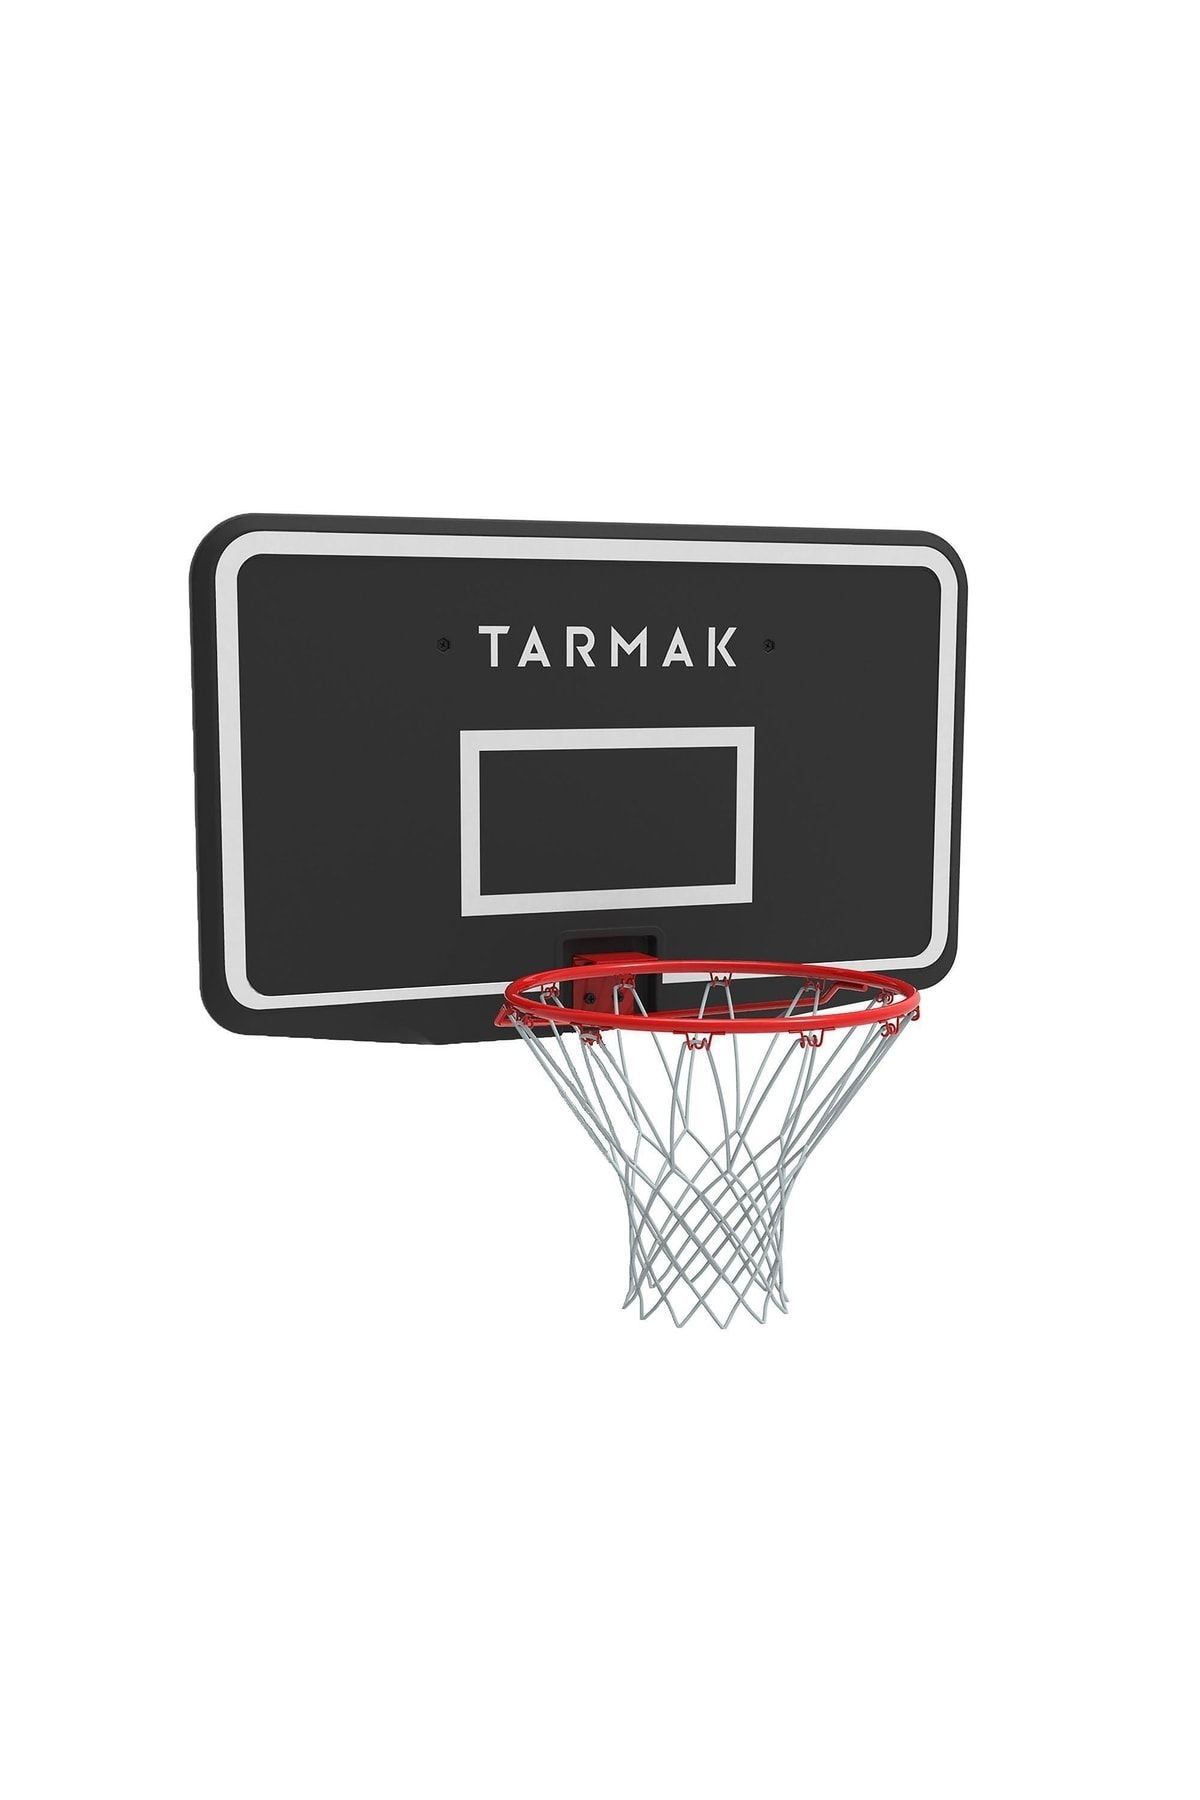 Decathlon Tarmak Basketbol Potası - Siyah / Kırmızı - Sb100